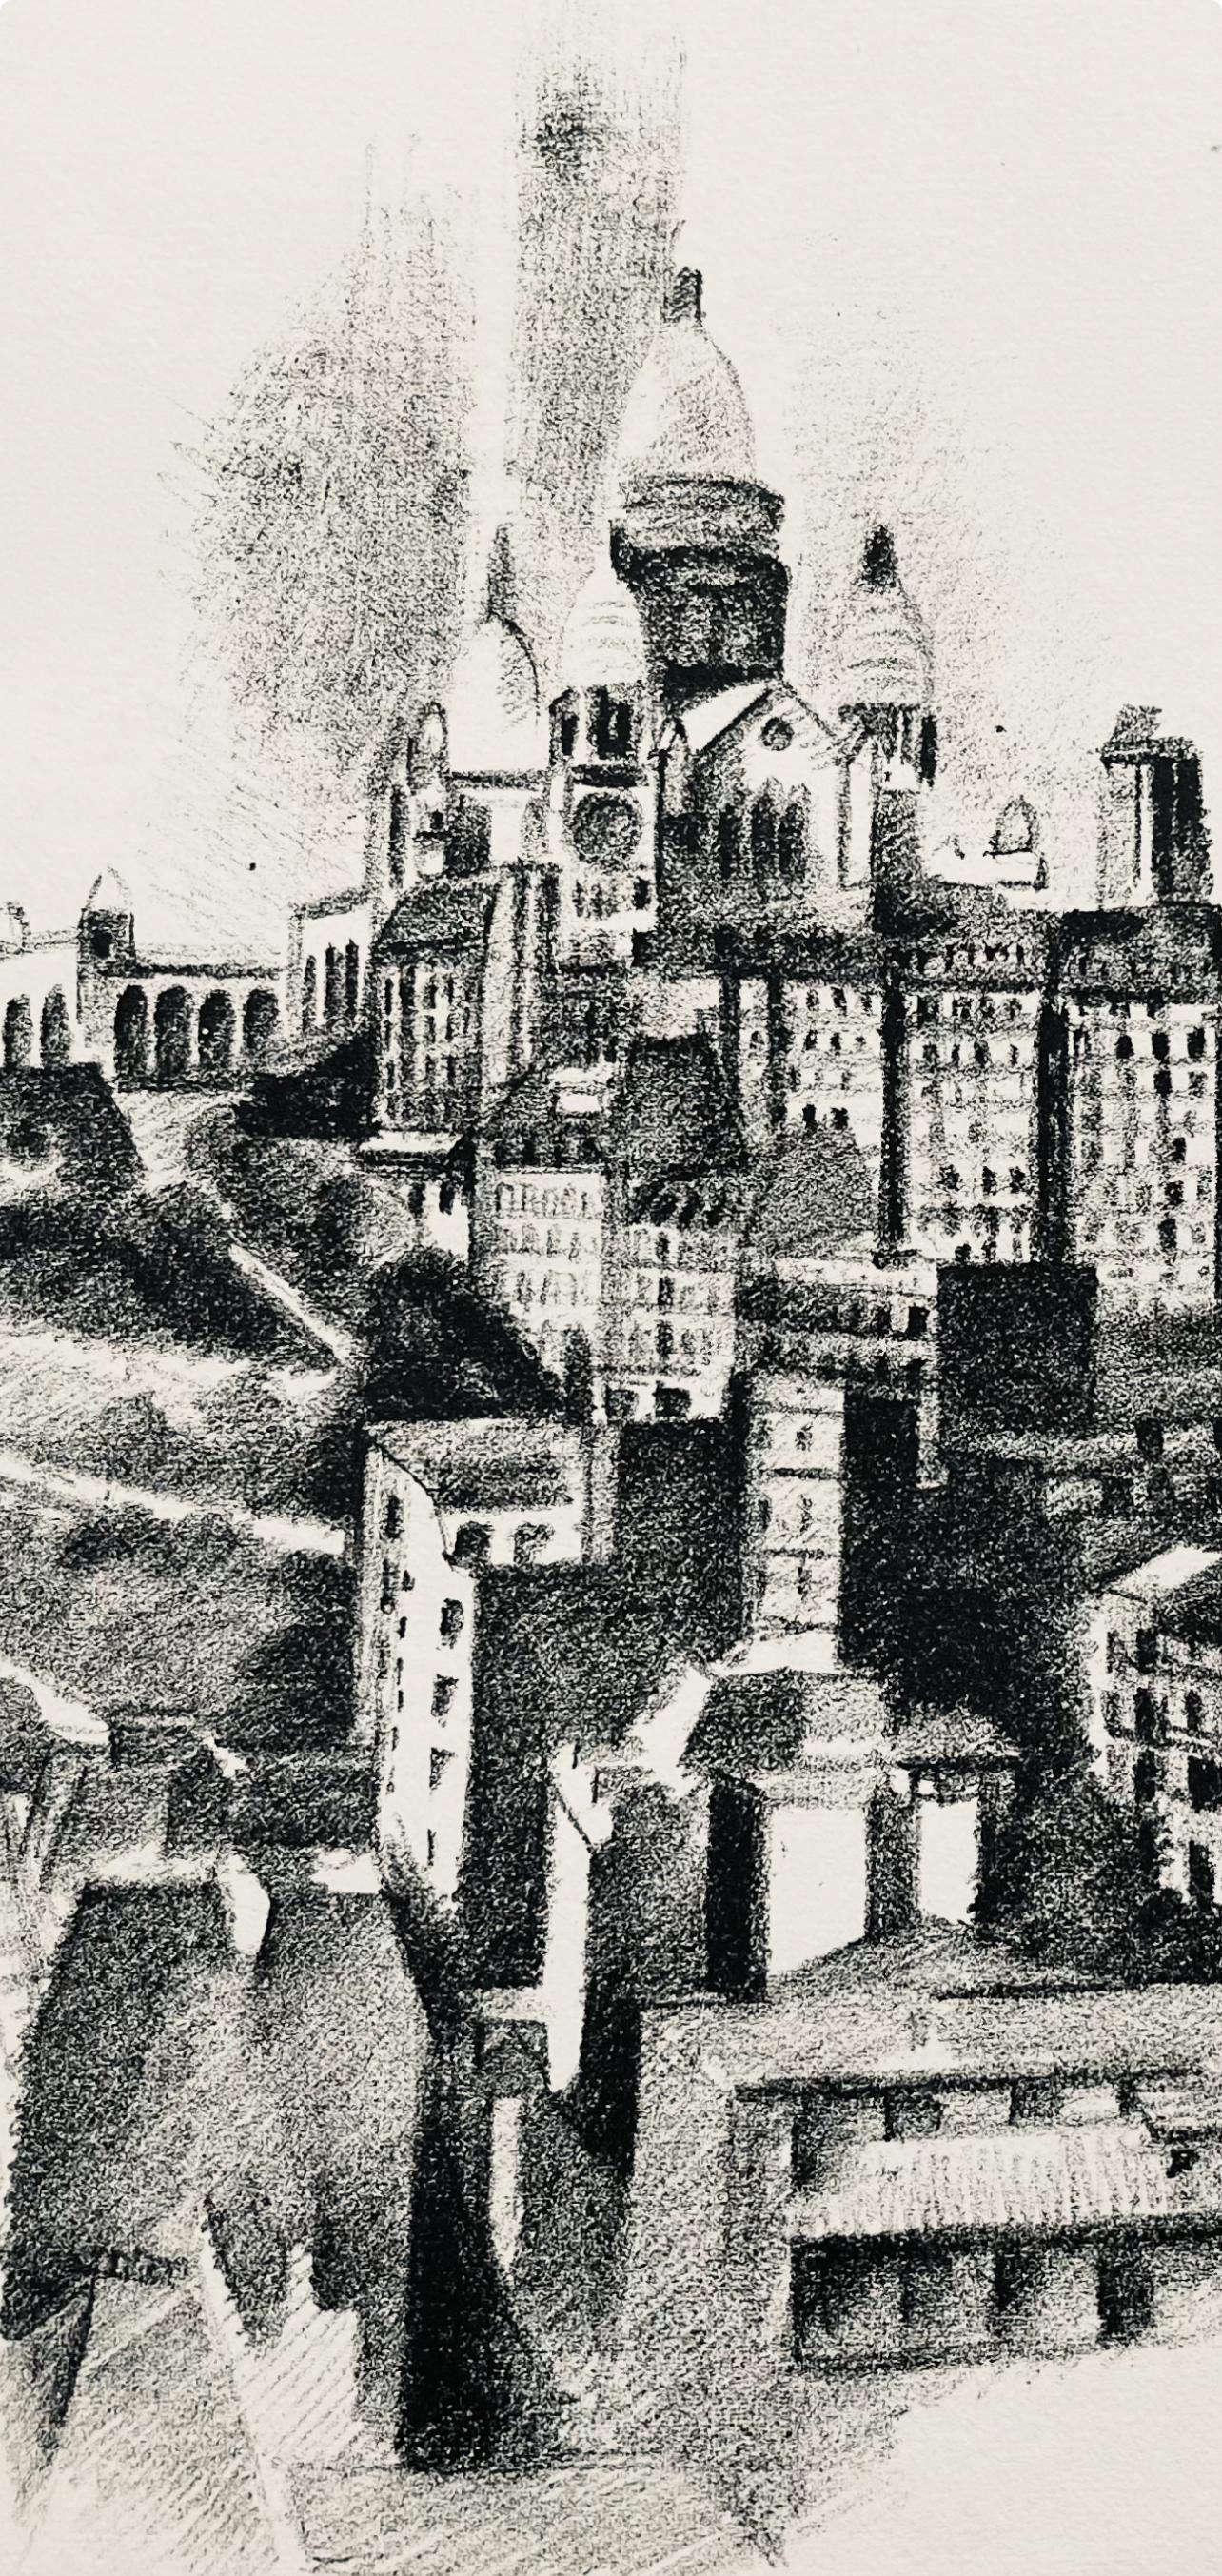 Delaunay, La butte Montmartre et le Sacre-Cœur (H 720-728), Allo! Paris! (after) - Print by Robert Delaunay